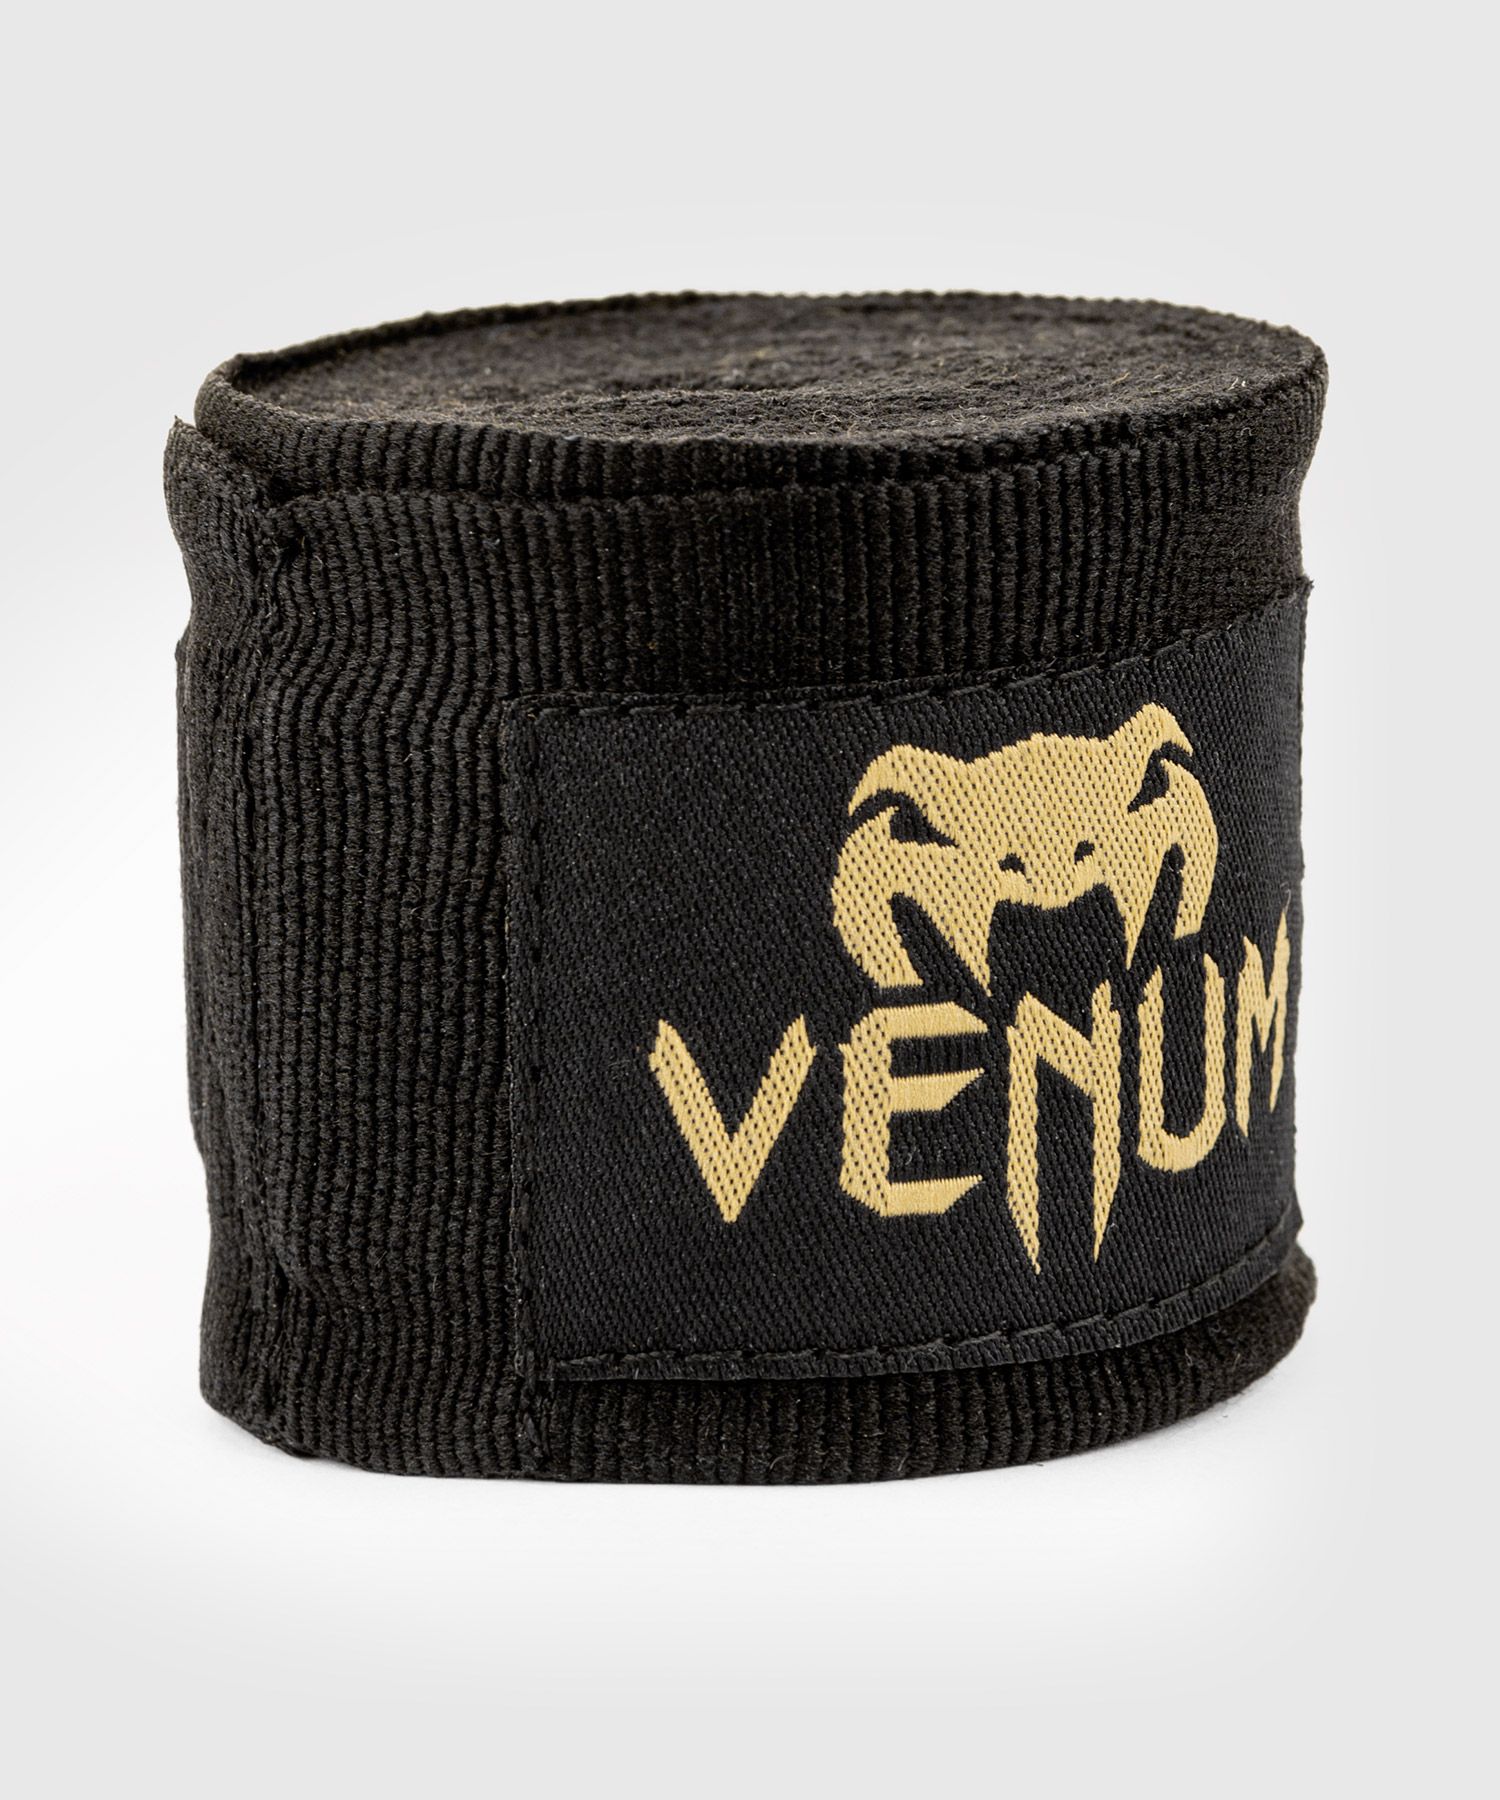 Venum Kontact ボクシングハンドラップ - 4.5m - ブラック/ゴールド